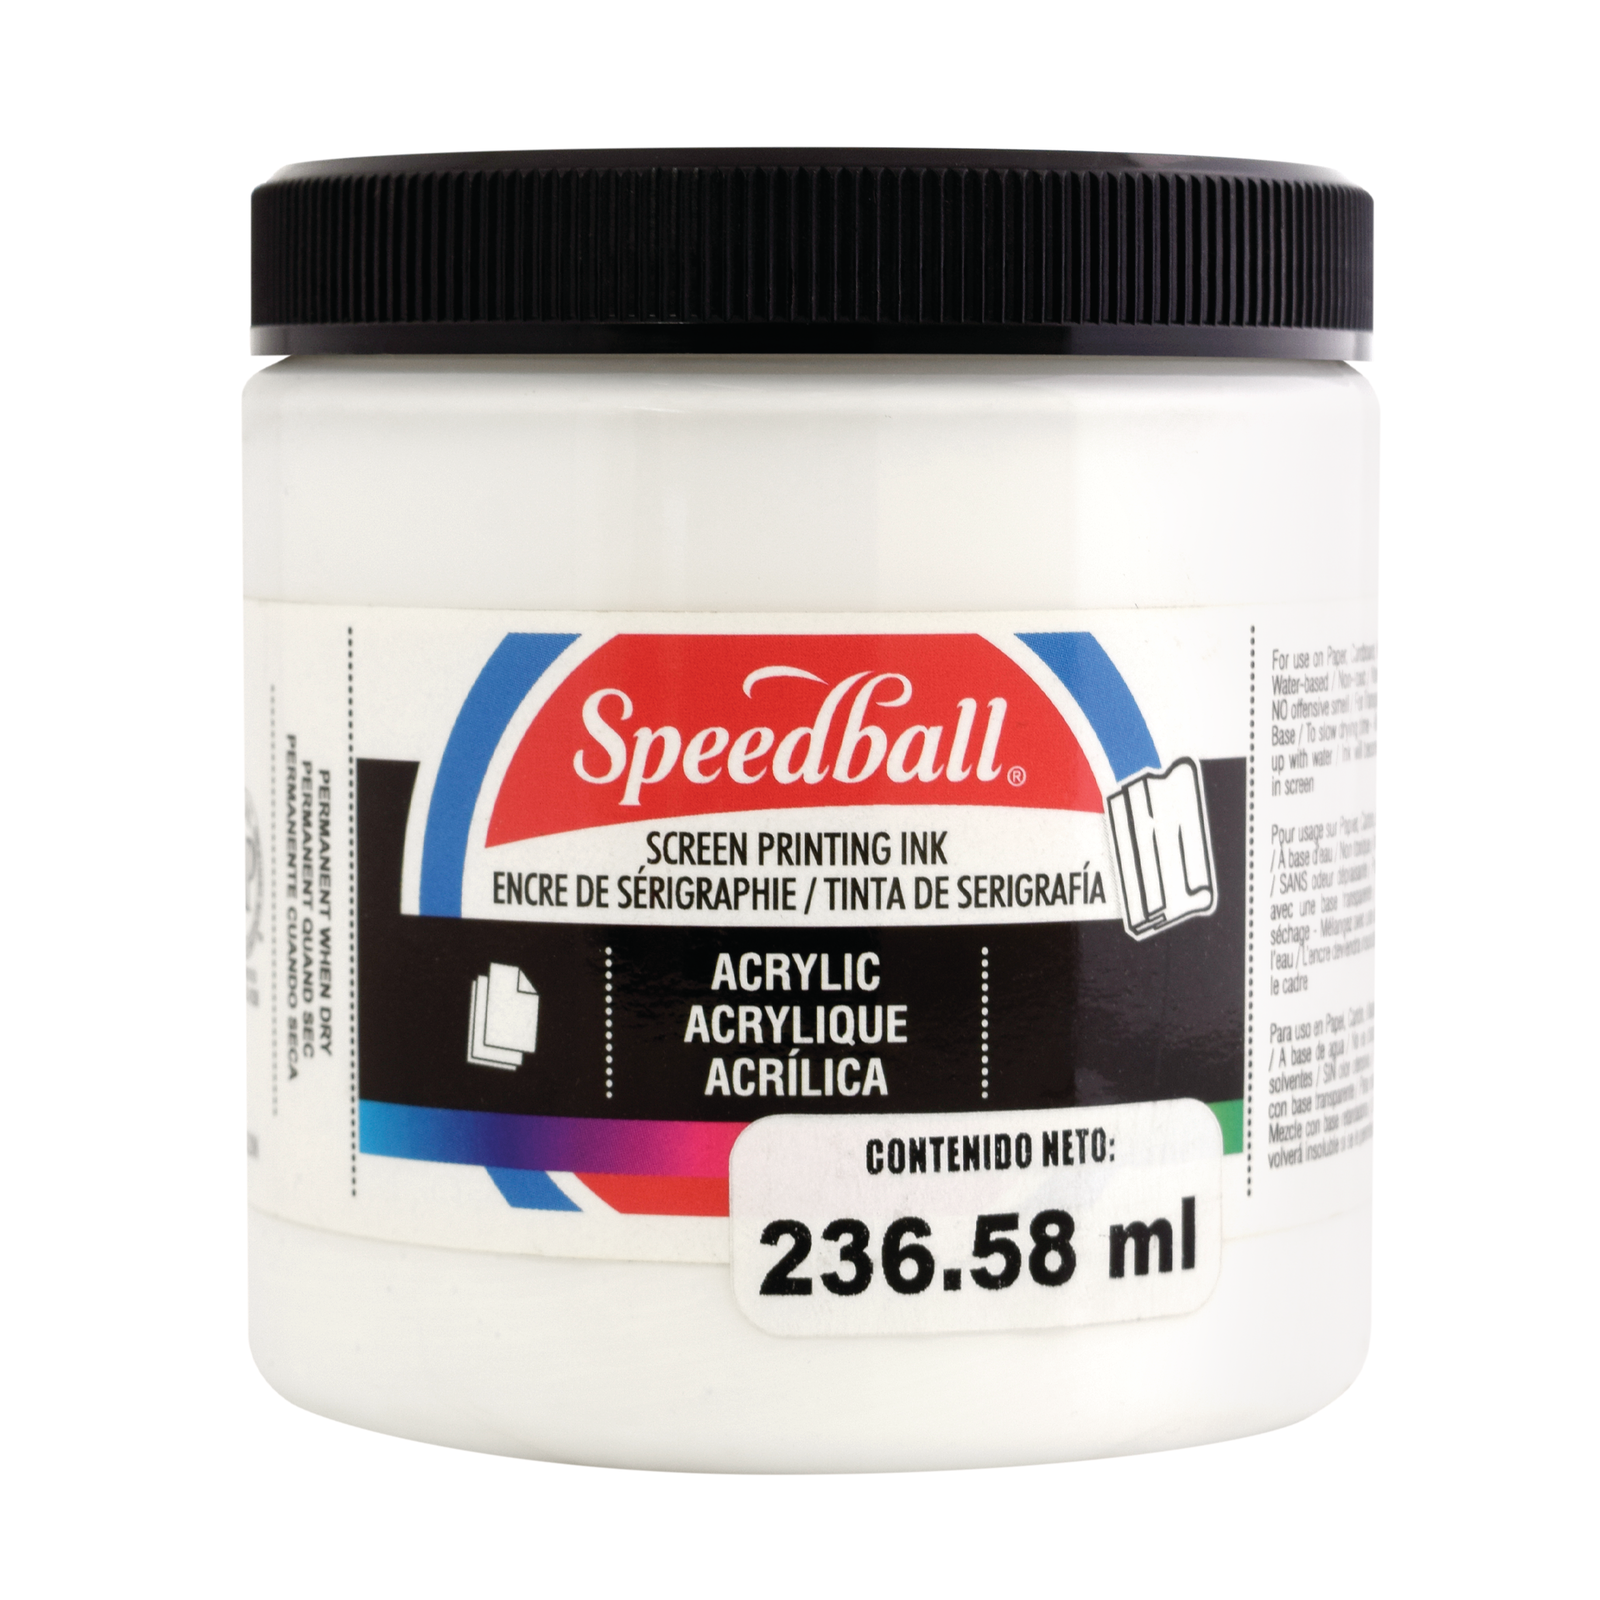 Speedball- Tinta acrílica para serigrafía